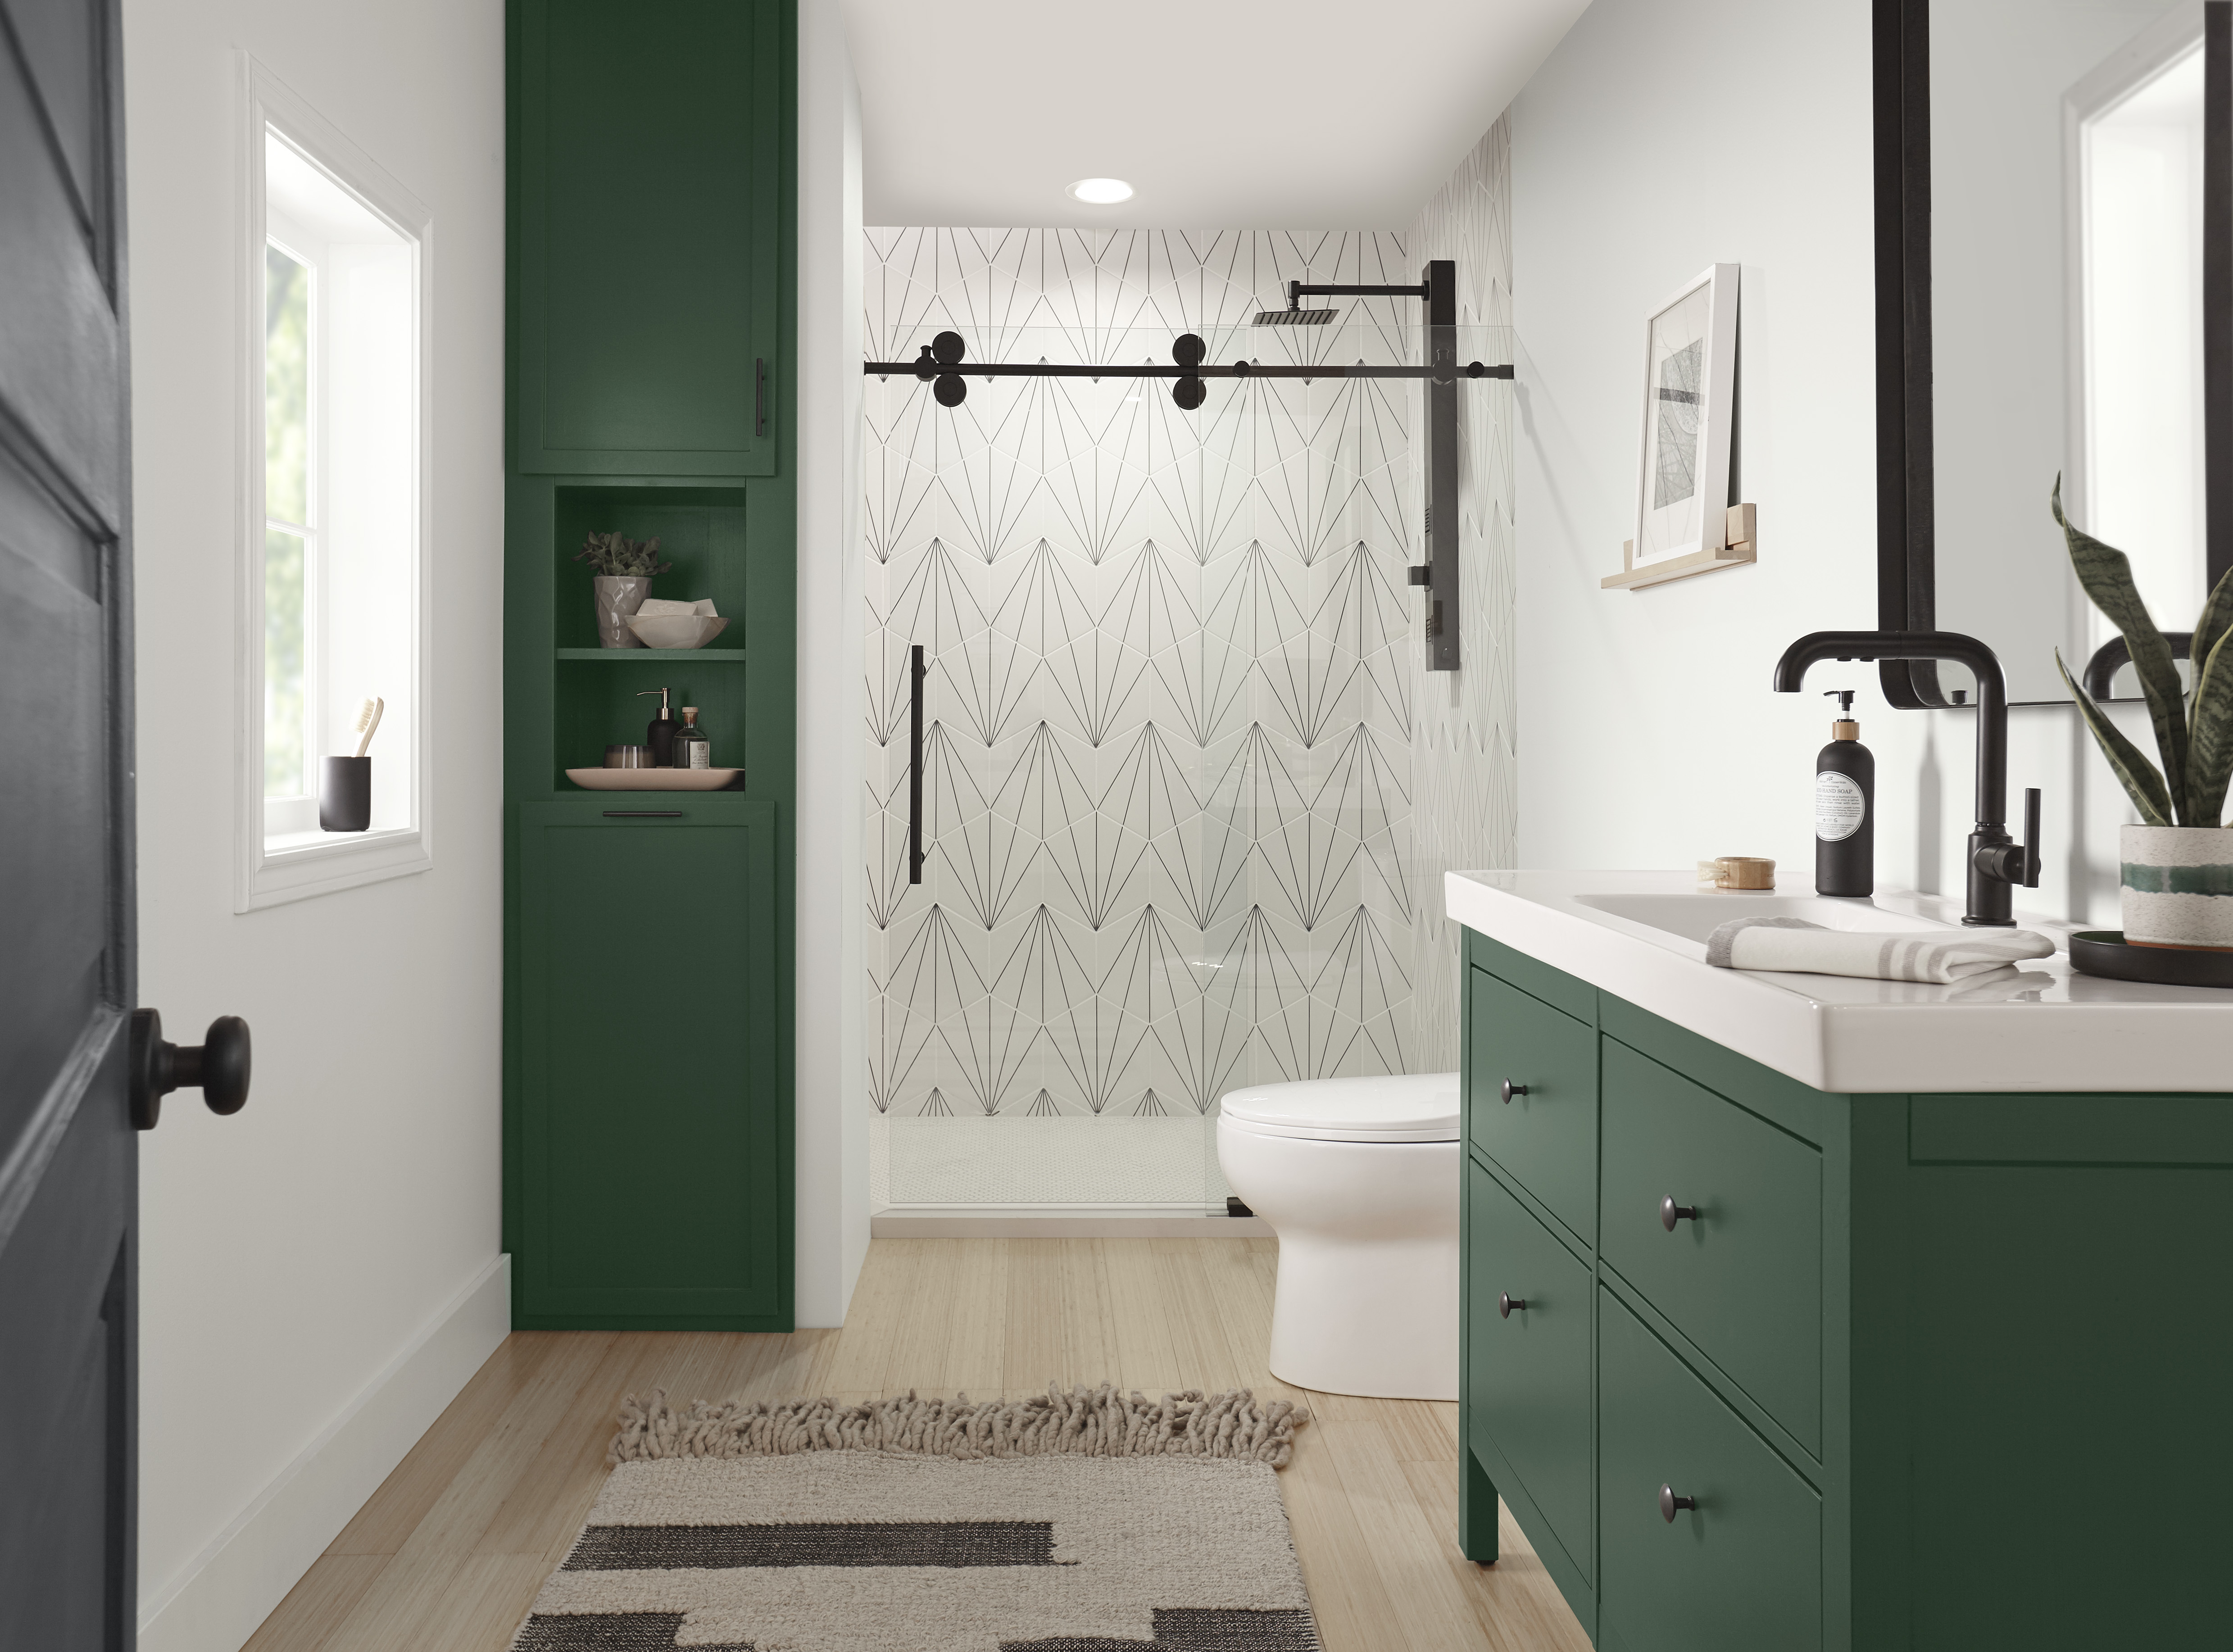 Une salle de bain moderne avec des armoires peintes dans un vert profond et des ferrures noires mates. 